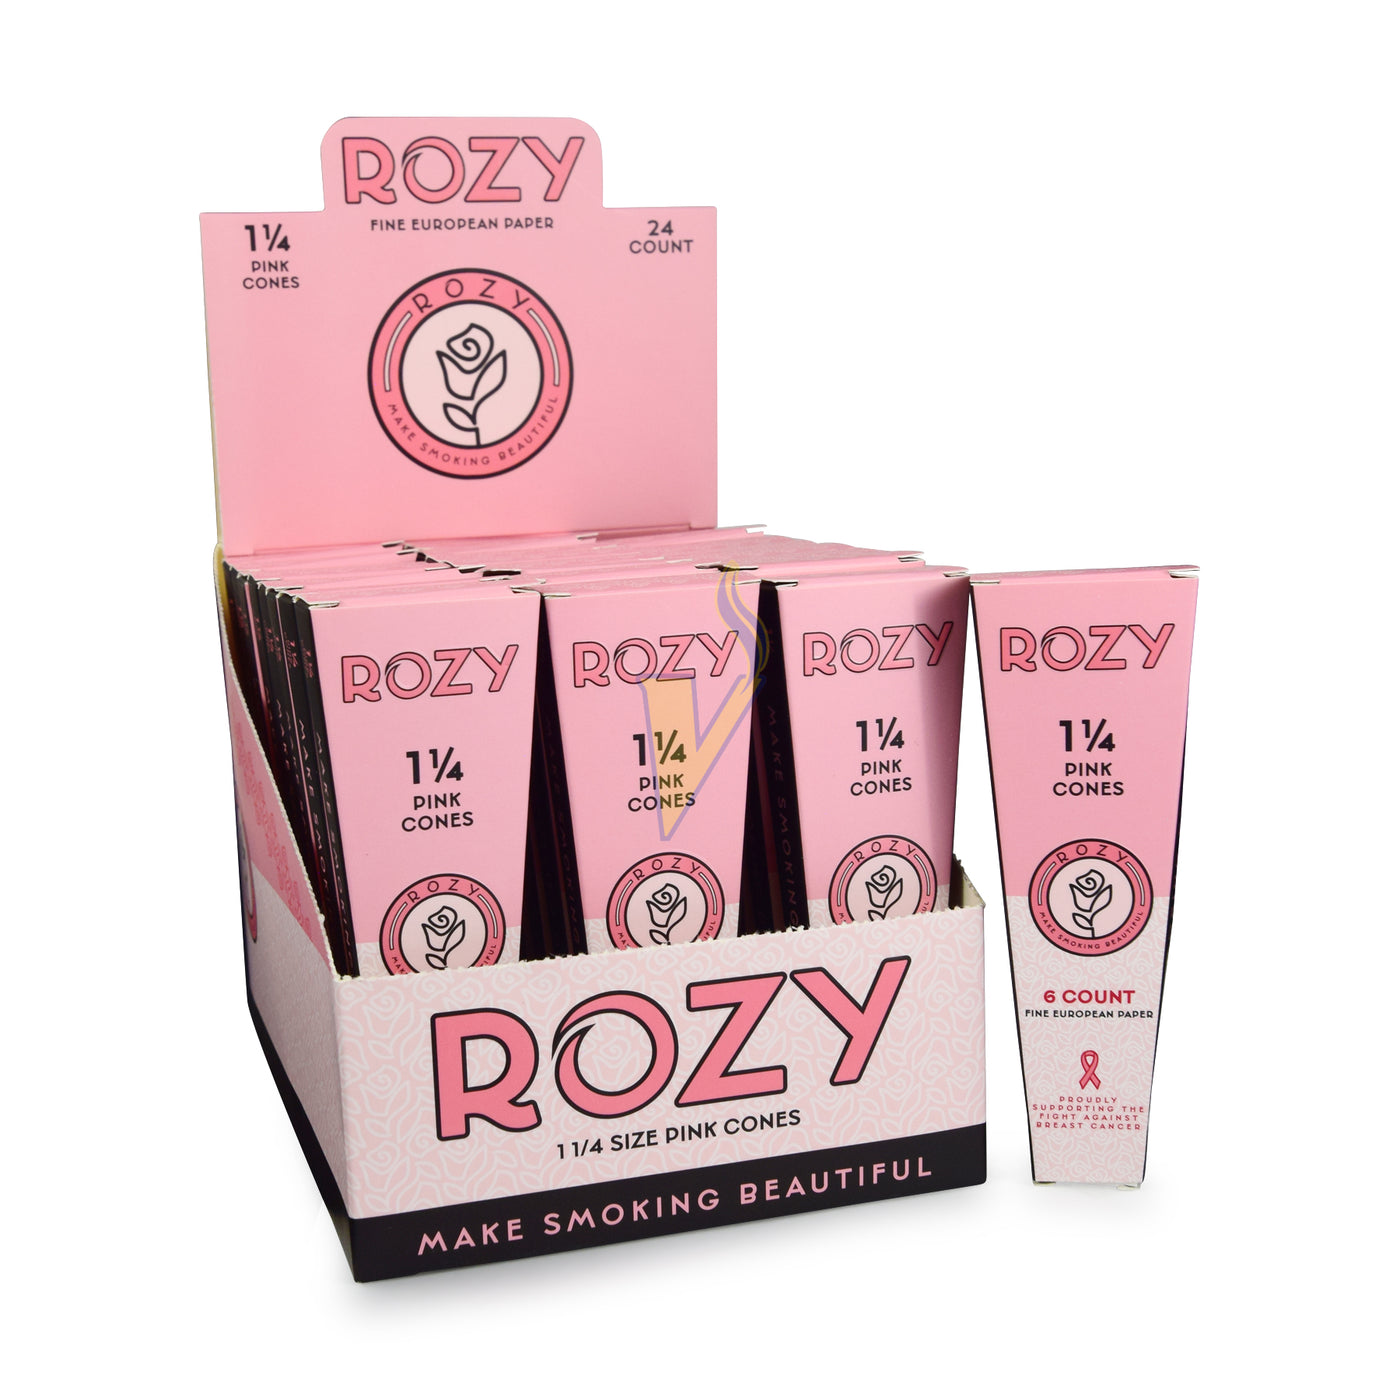 Rozy Pink Cones